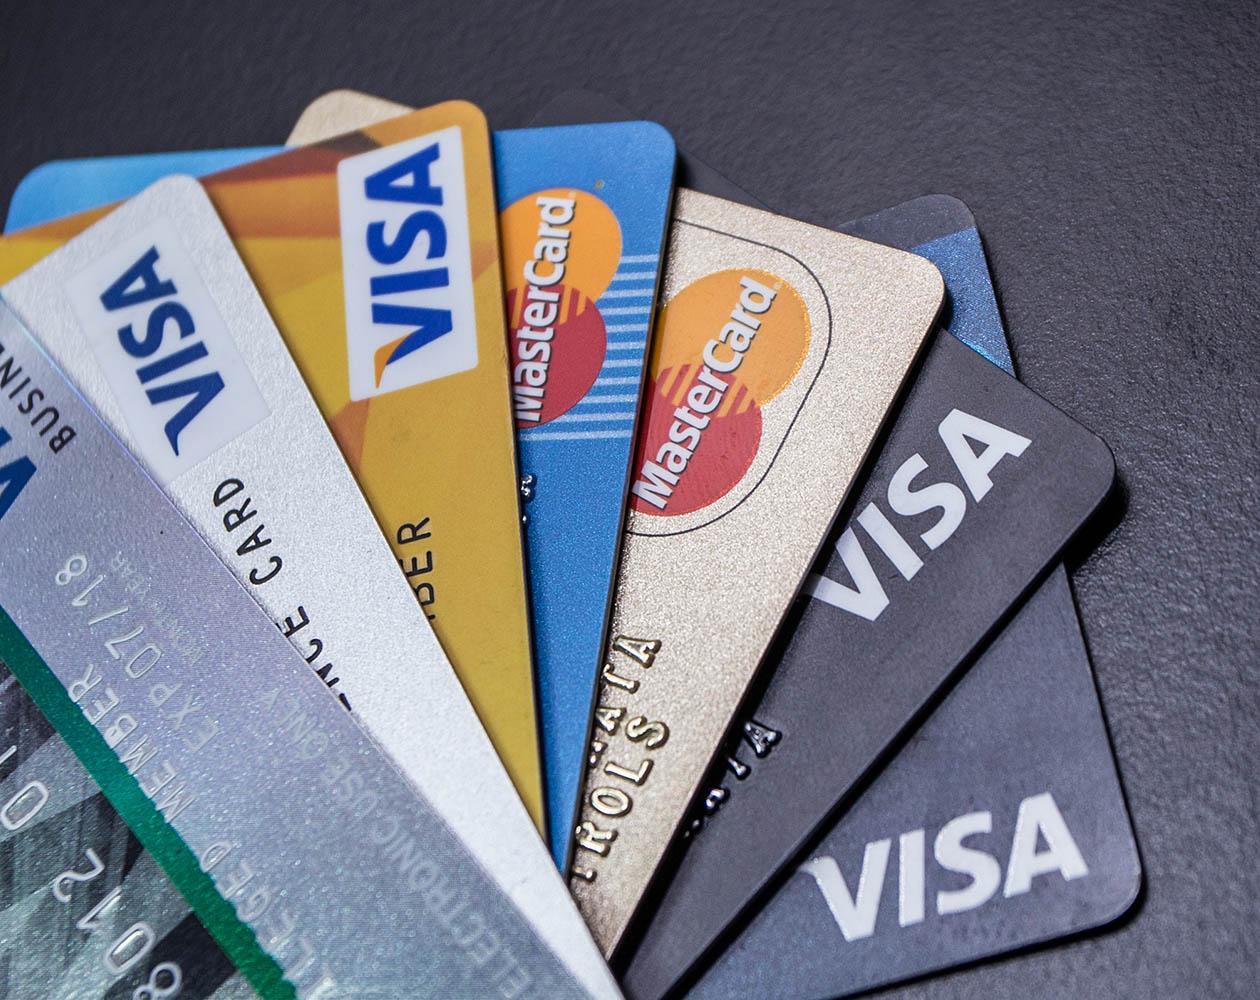 Кредитка – это банковская карта с привязанным к ней кредитным лимитом